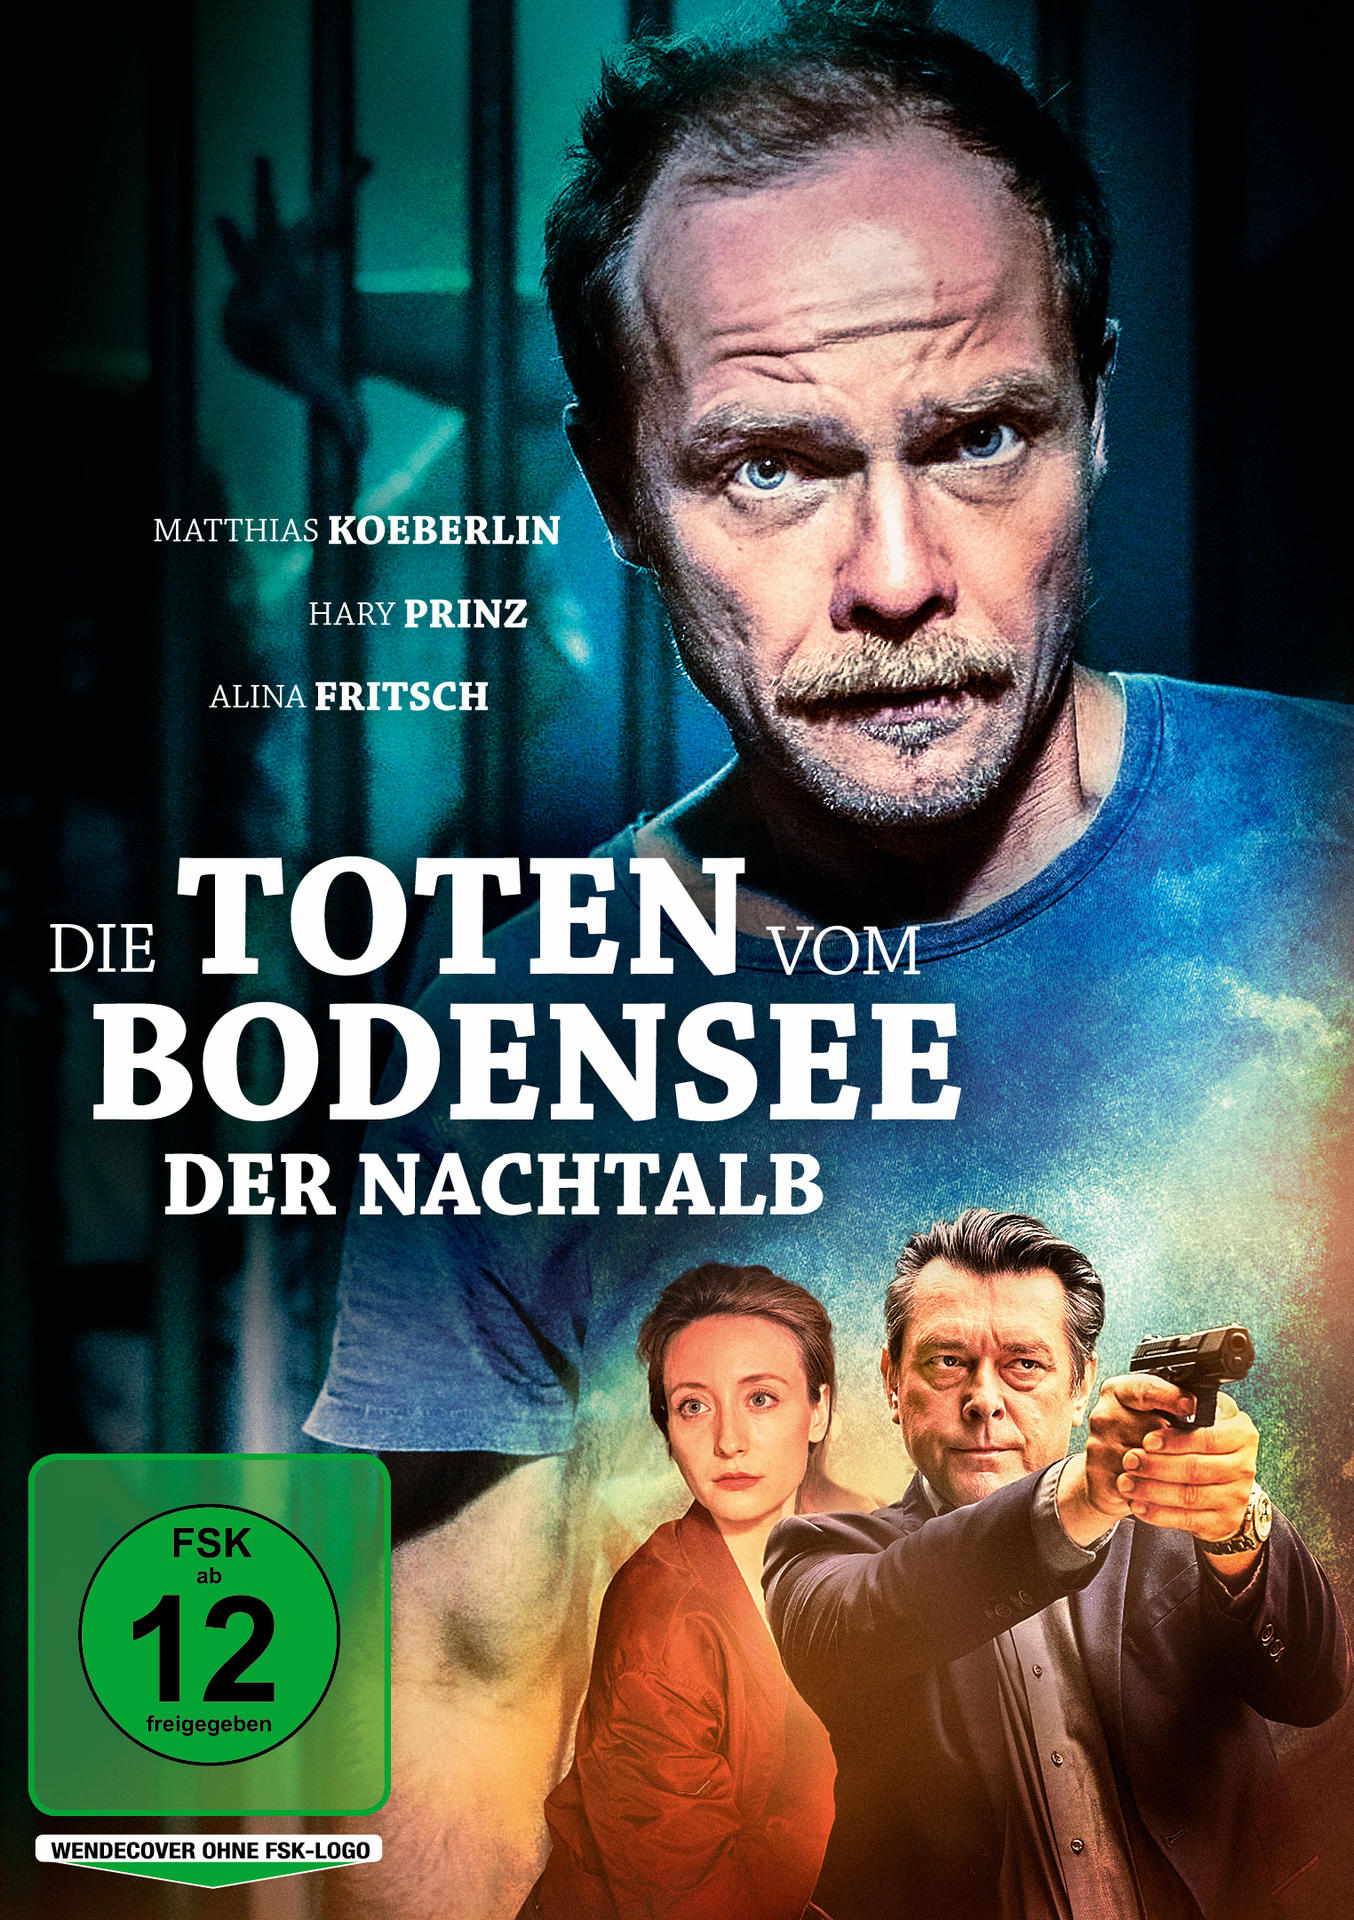 vom DVD Bodensee: Der Toten Die Nachtalb